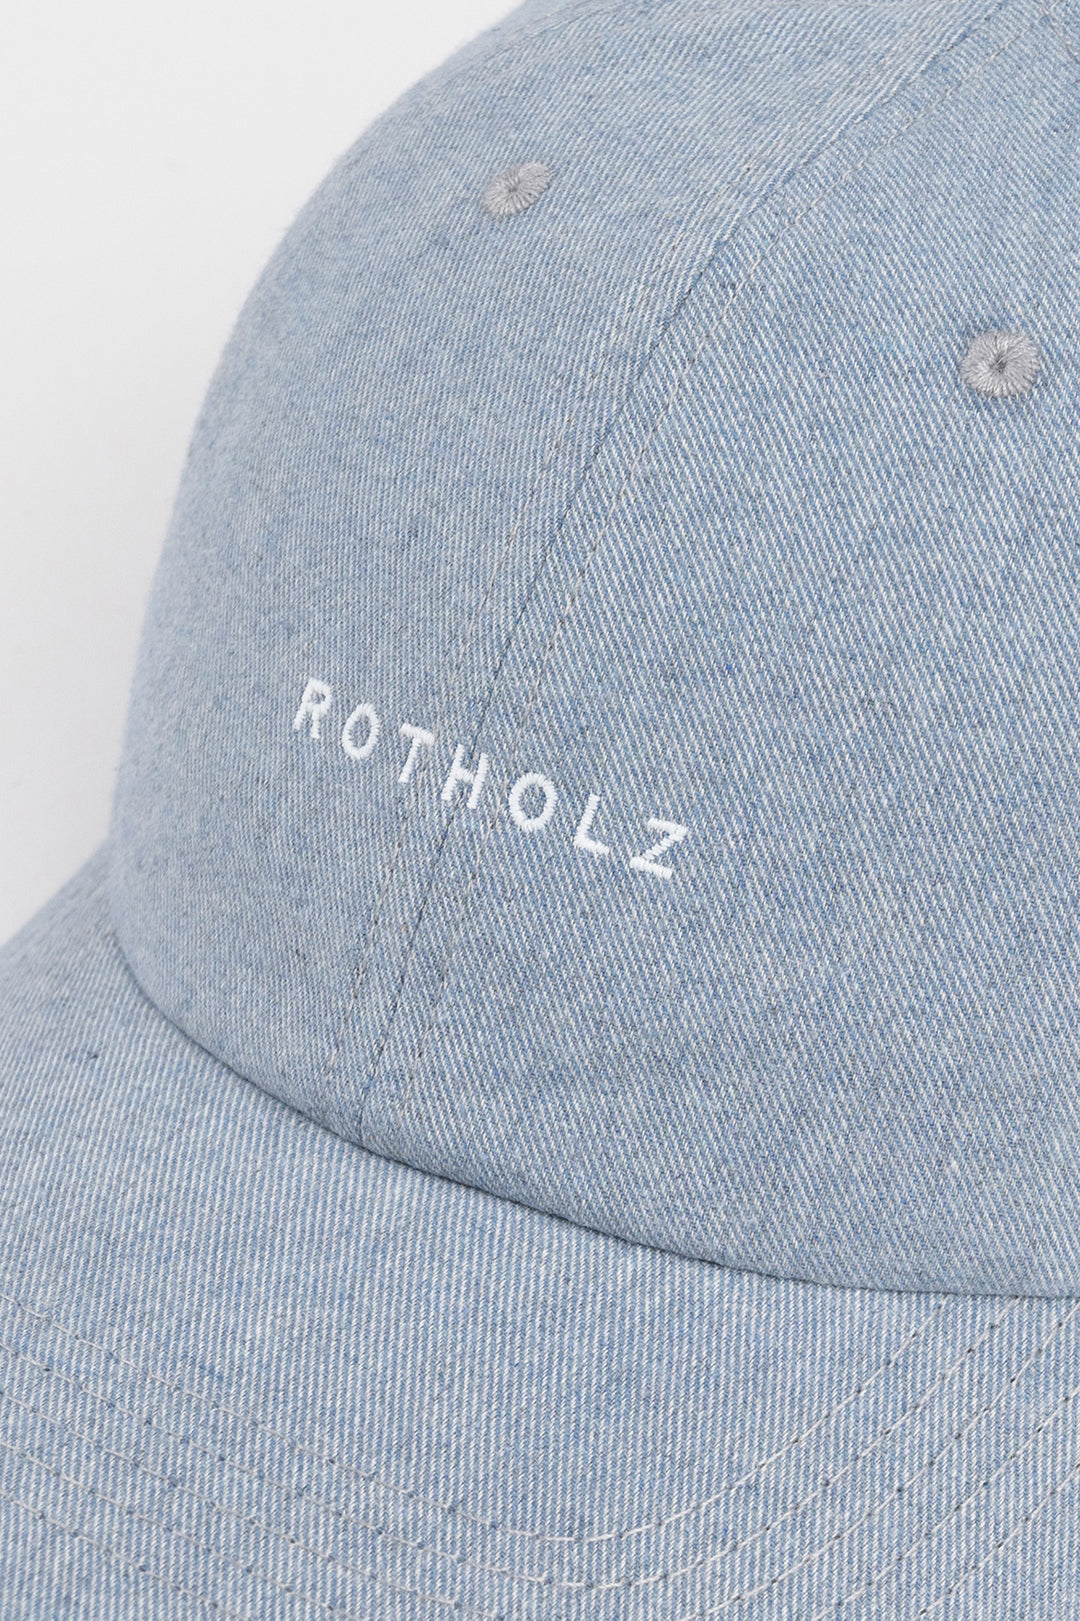 Logo de casquette bleu-gris en coton 100% biologique de Rotholz